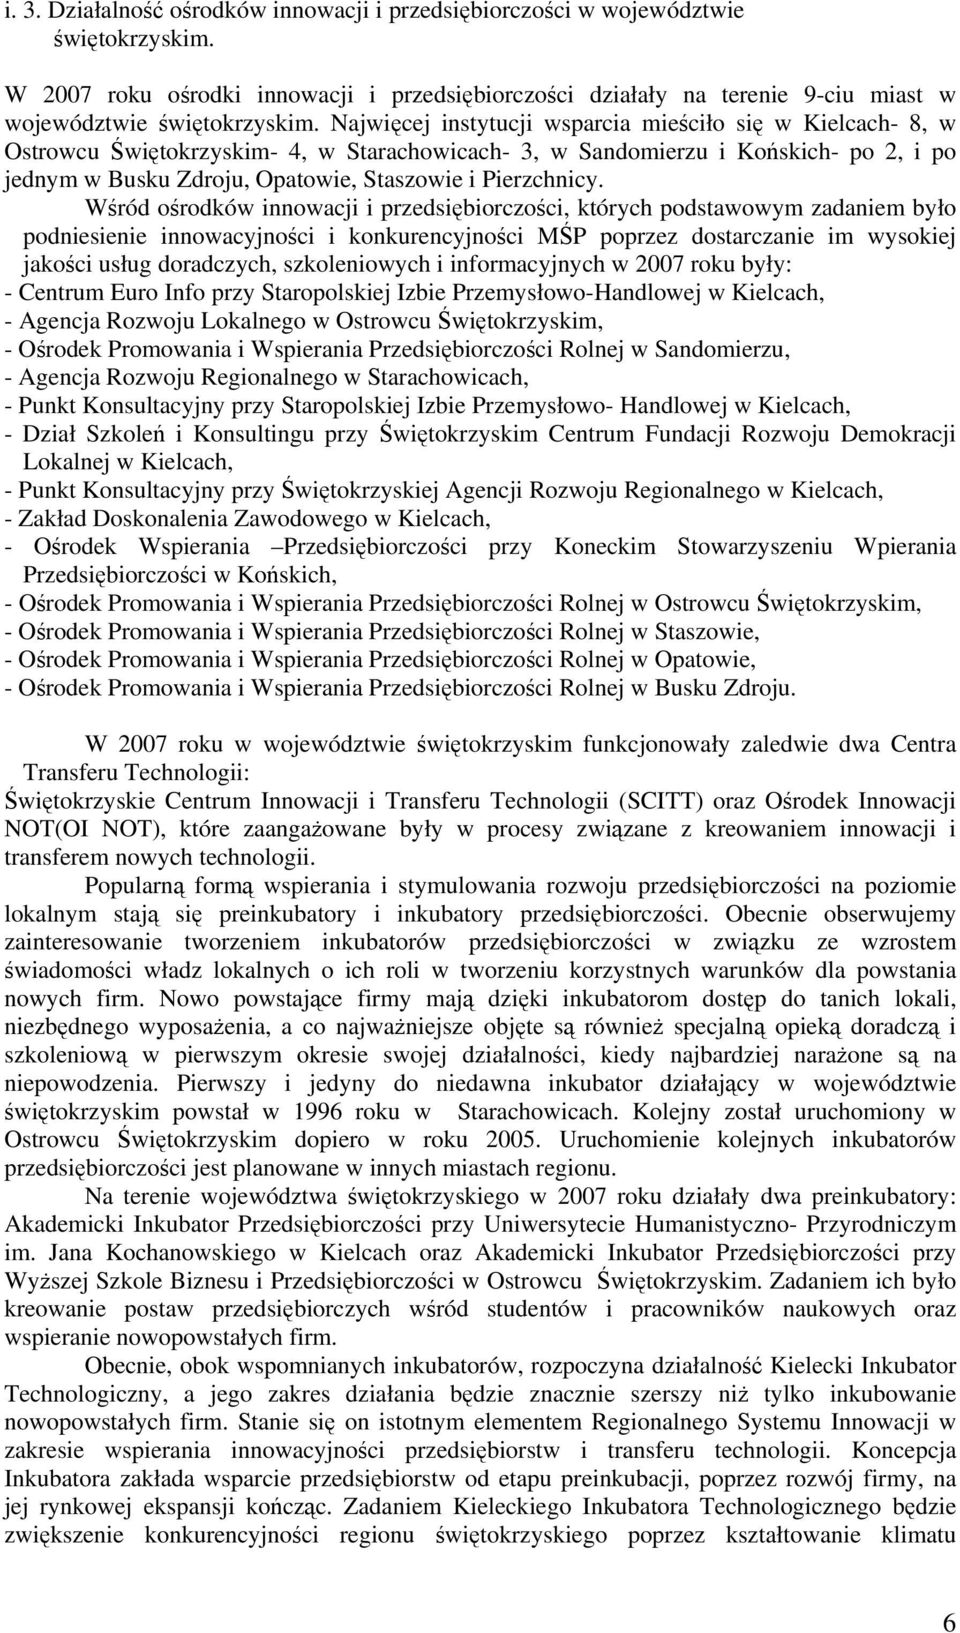 Najwięcej instytucji wsparcia mieściło się w Kielcach- 8, w Ostrowcu Świętokrzyskim- 4, w Starachowicach- 3, w Sandomierzu i Końskich- po 2, i po jednym w Busku Zdroju, Opatowie, Staszowie i